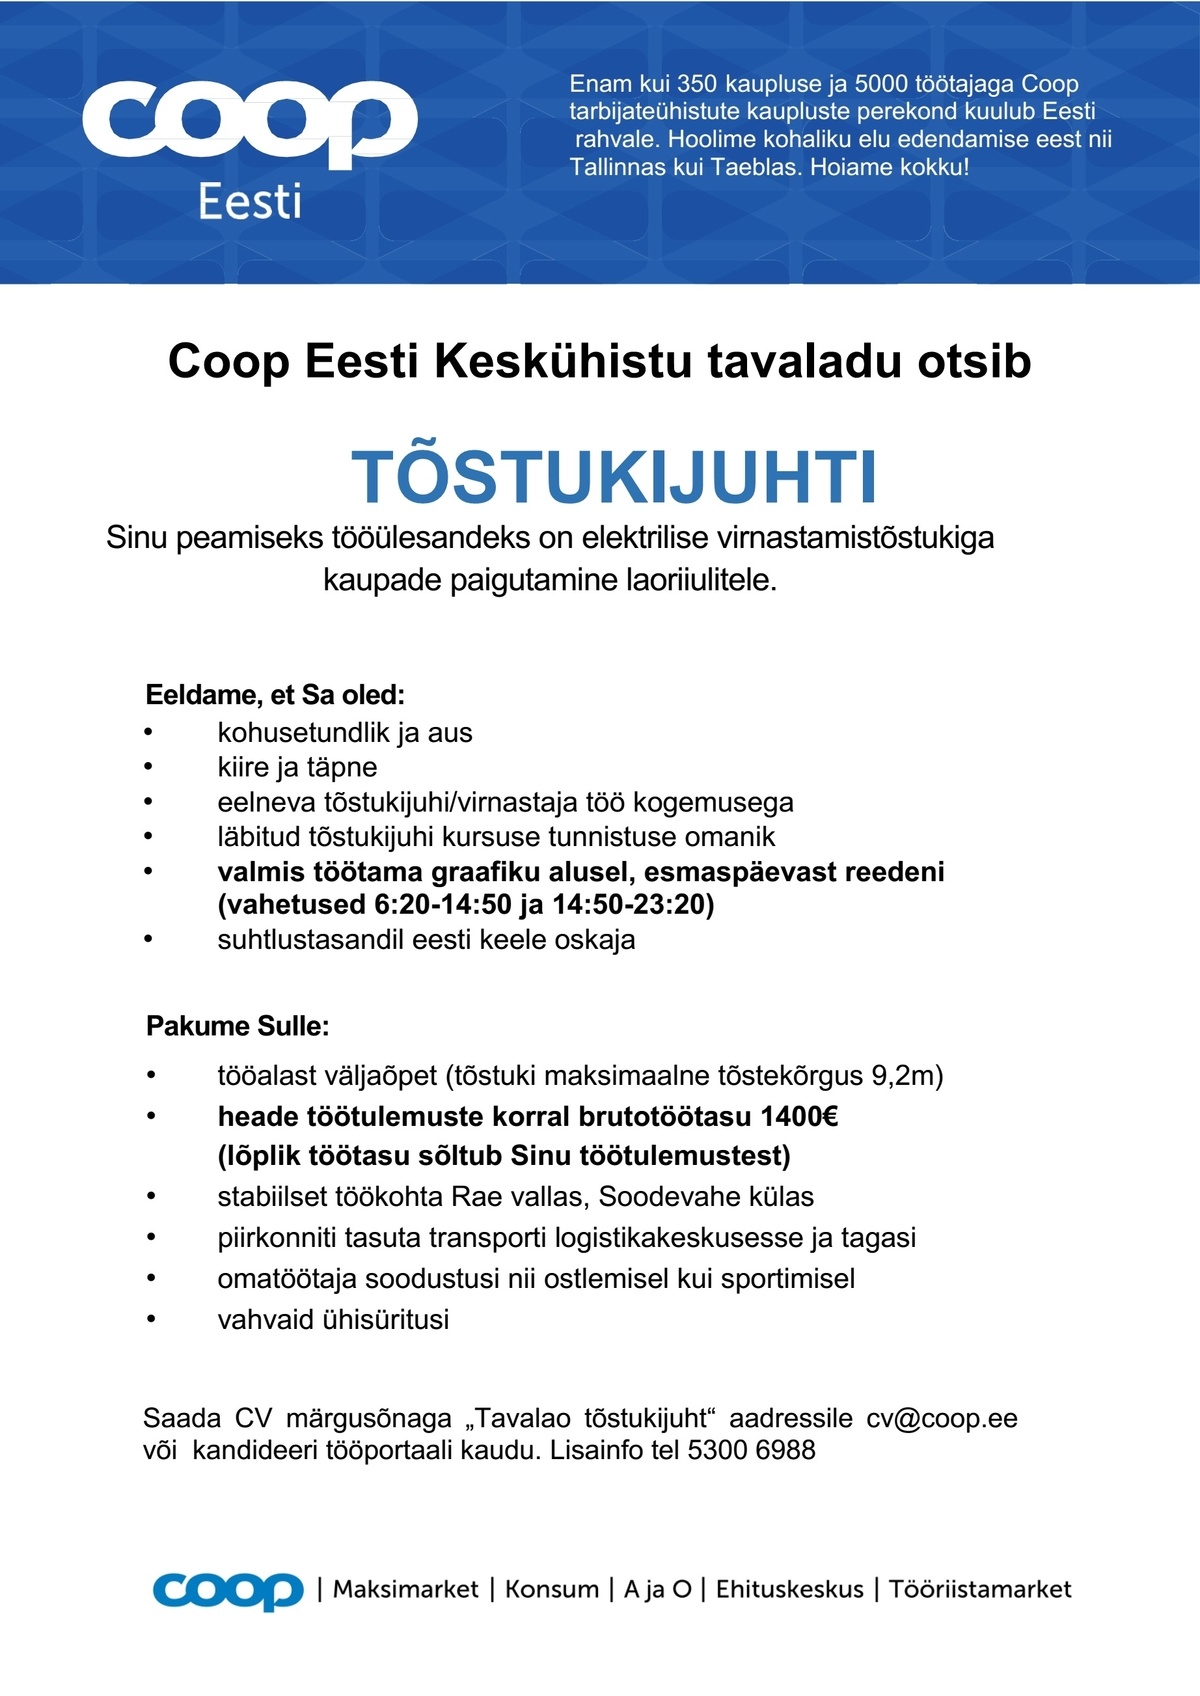 Coop Eesti Keskühistu Tõstukijuht (tavaladu)